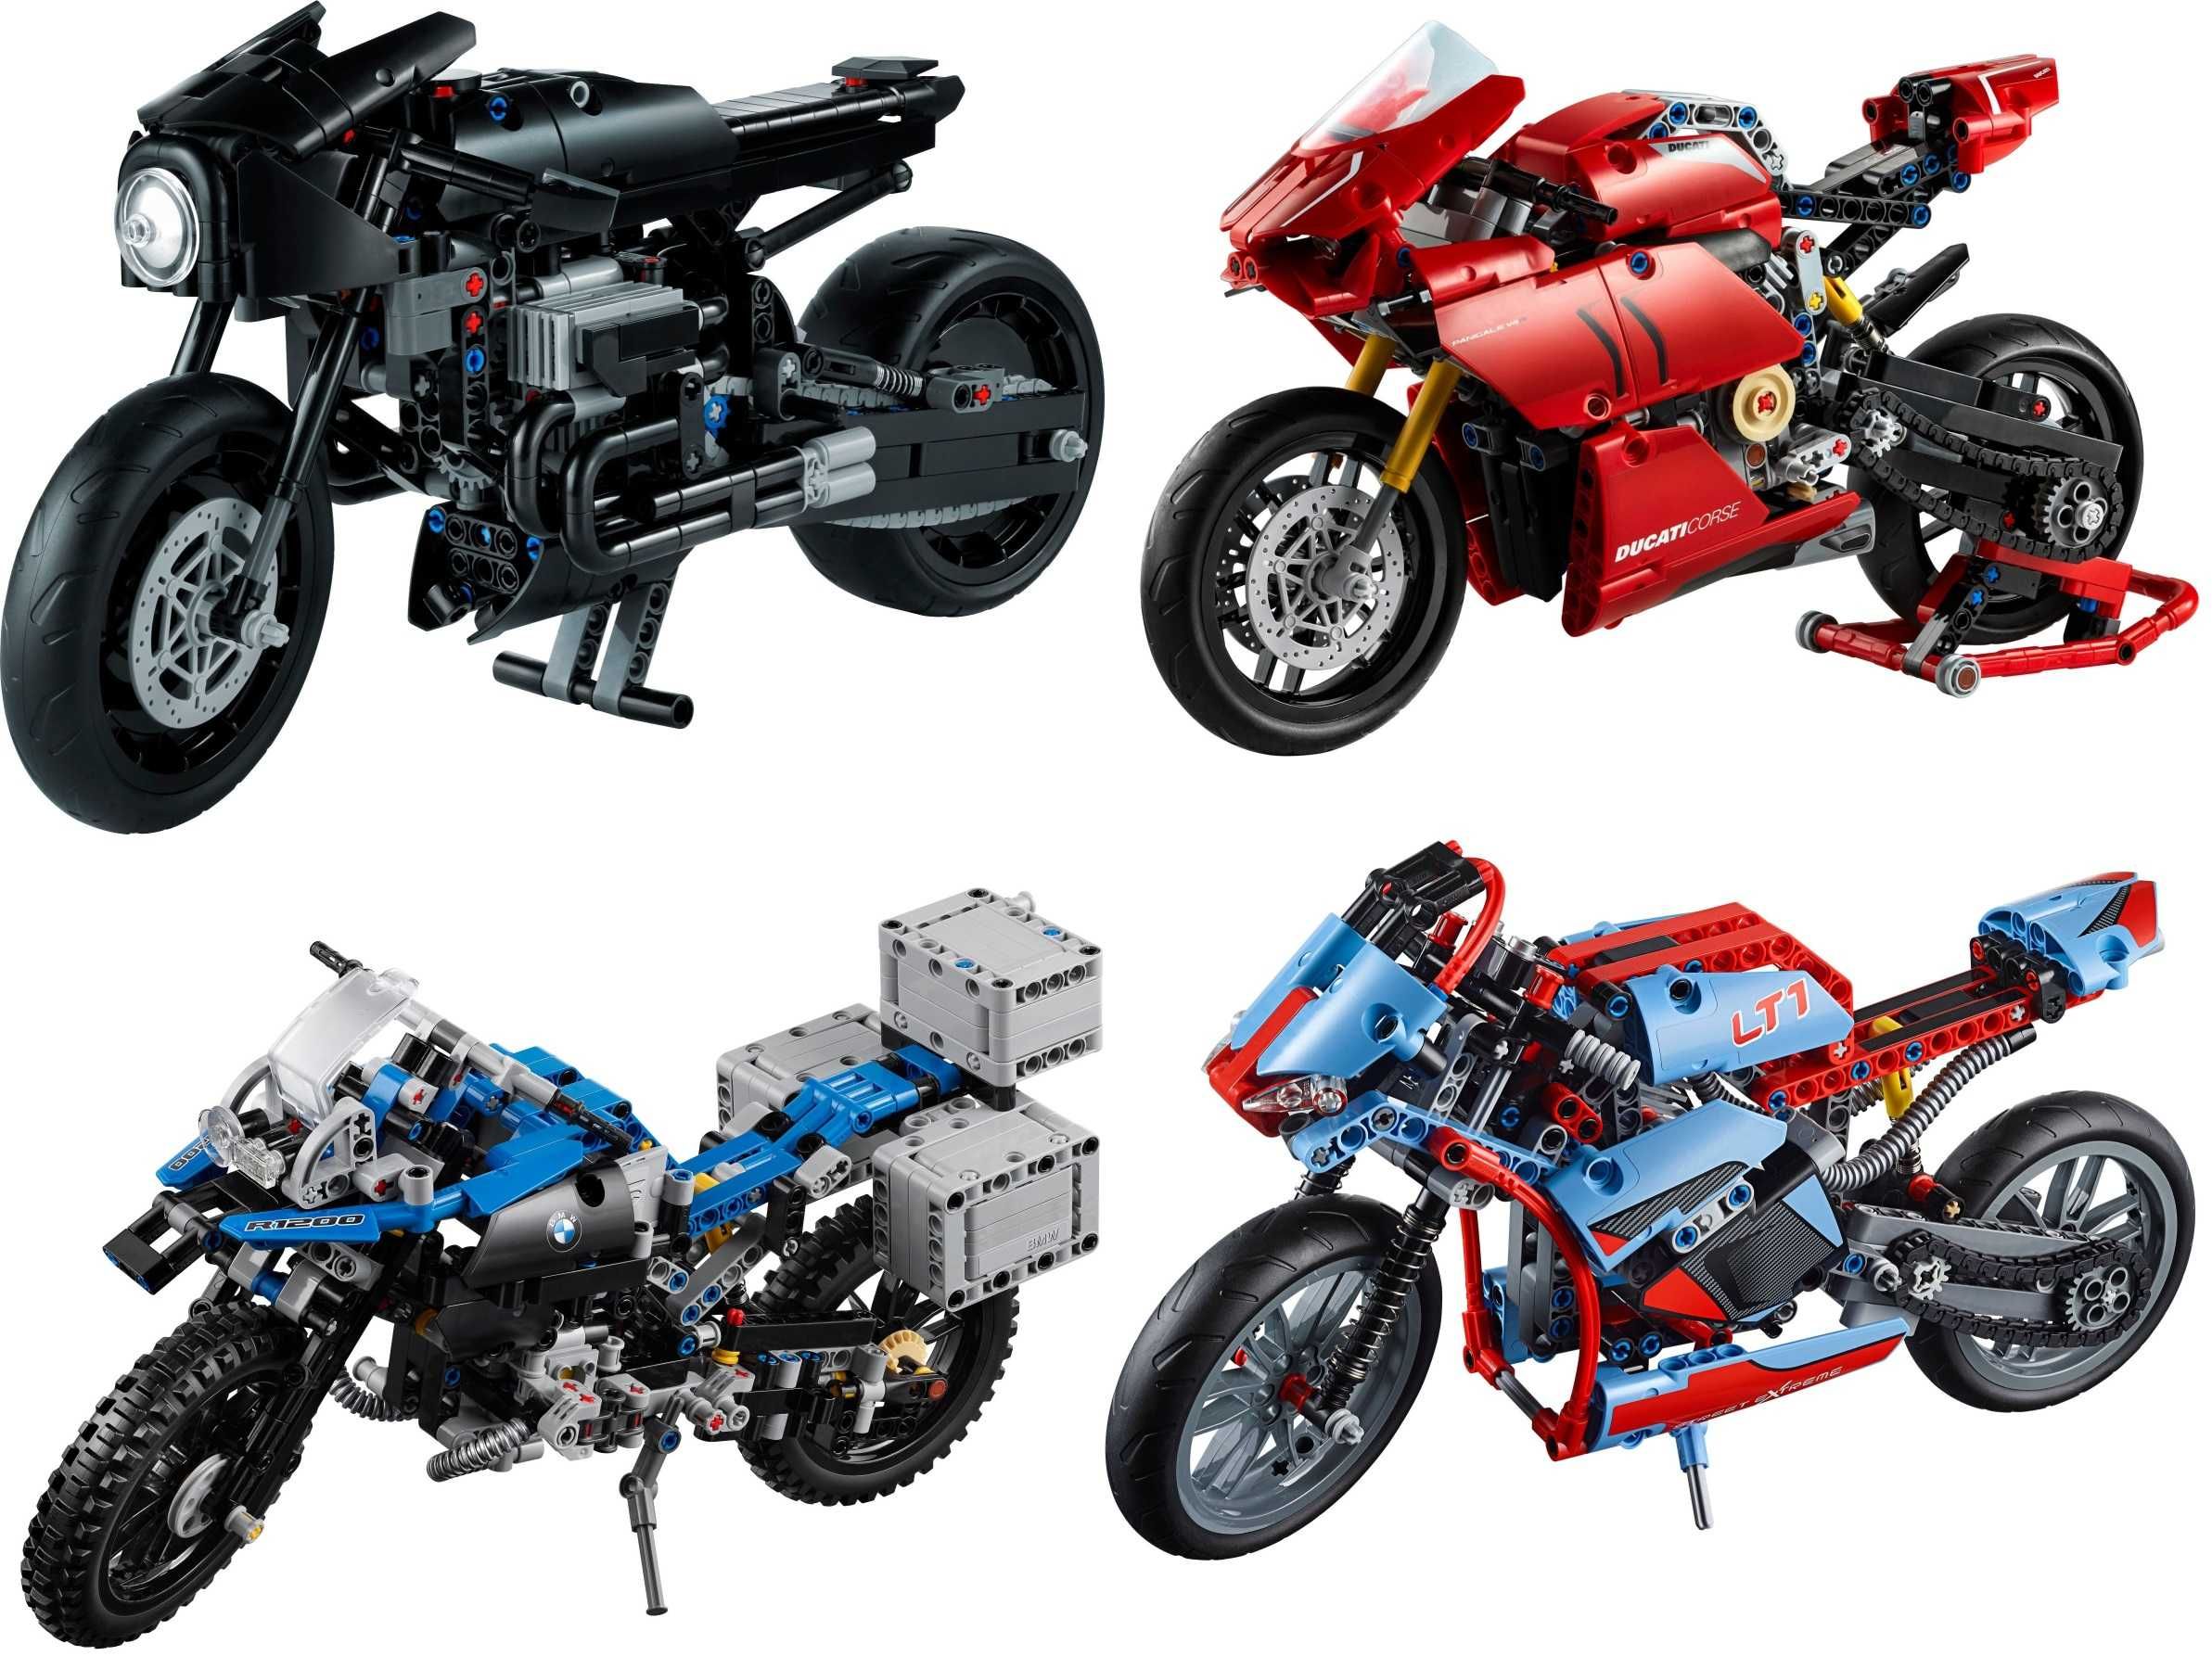 Motocykle LEGO Technic 8051, 8291, 8417, 8848, 8422, 42063 i inne